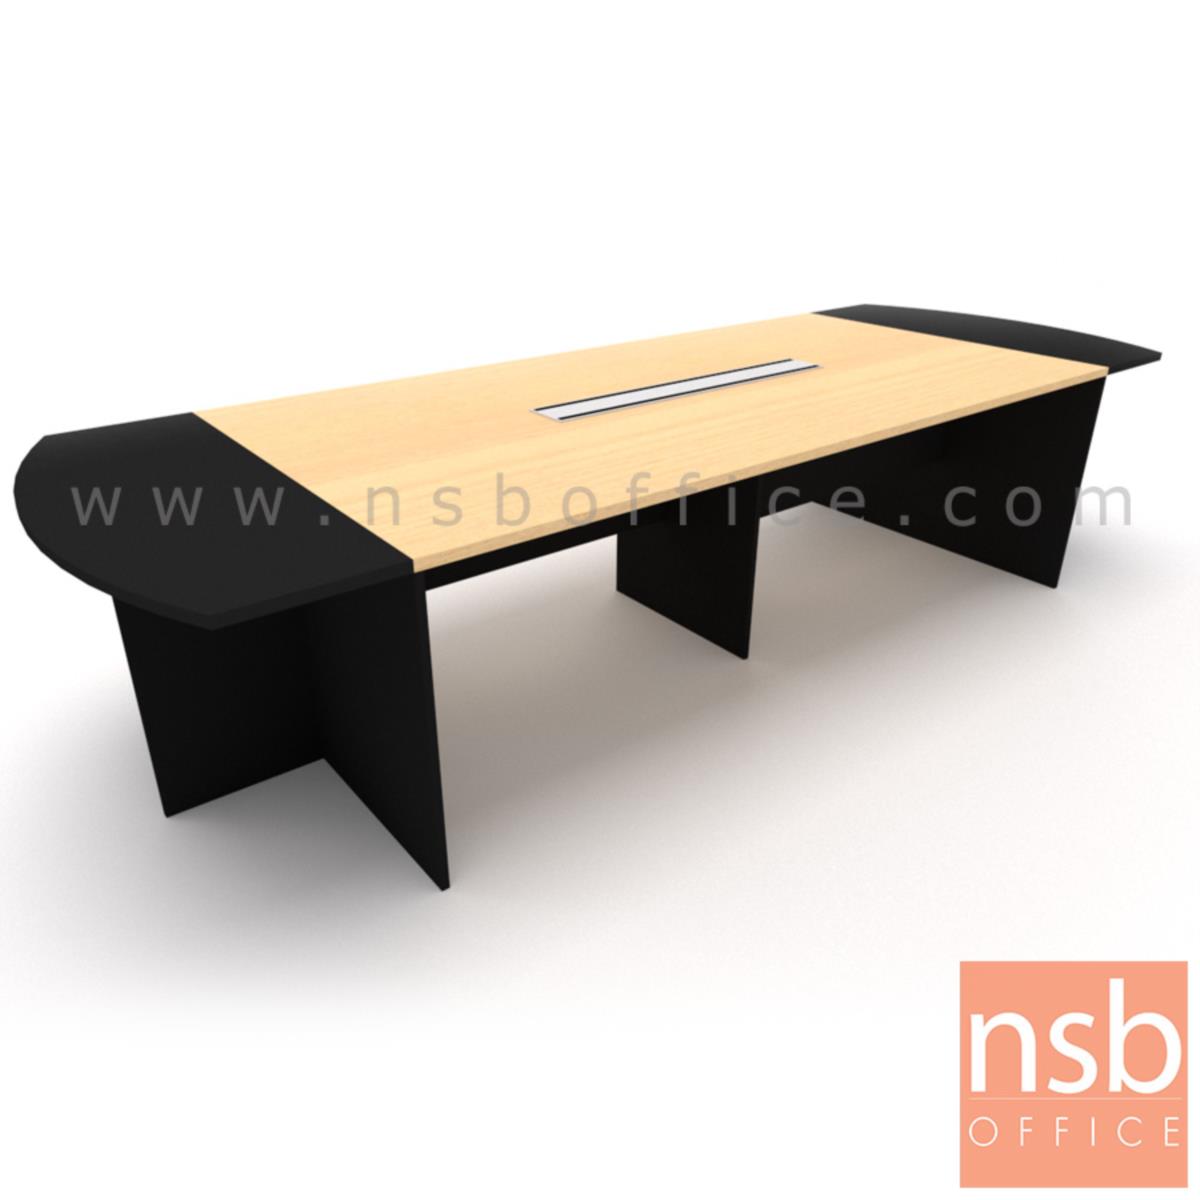 โต๊ะประชุมทรงเหลี่ยมหัวโค้ง ไม้ล้วน รุ่น Allisyn (อัลลิซิน) ขนาด 360W*120D cm. พร้อมป็อบอัพหน้าโต๊ะ